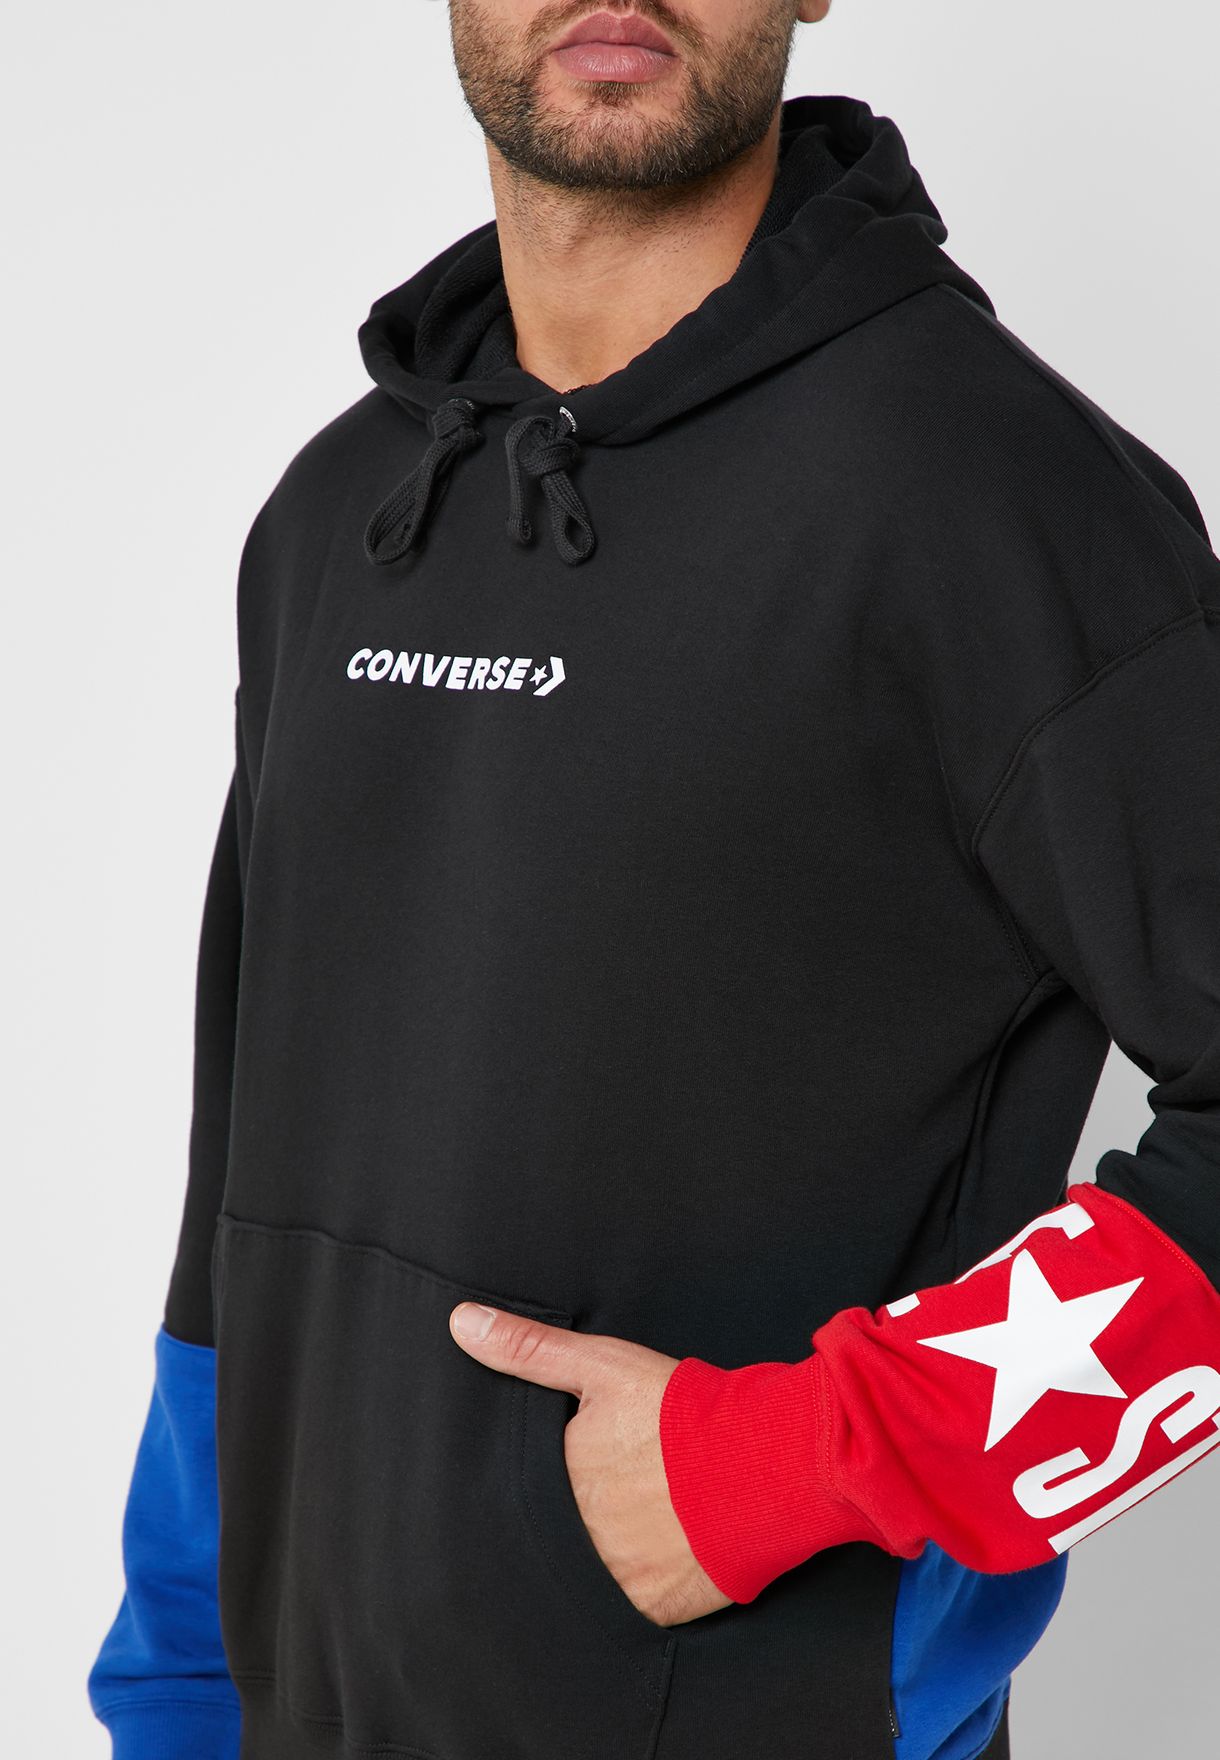 converse one star hoodie